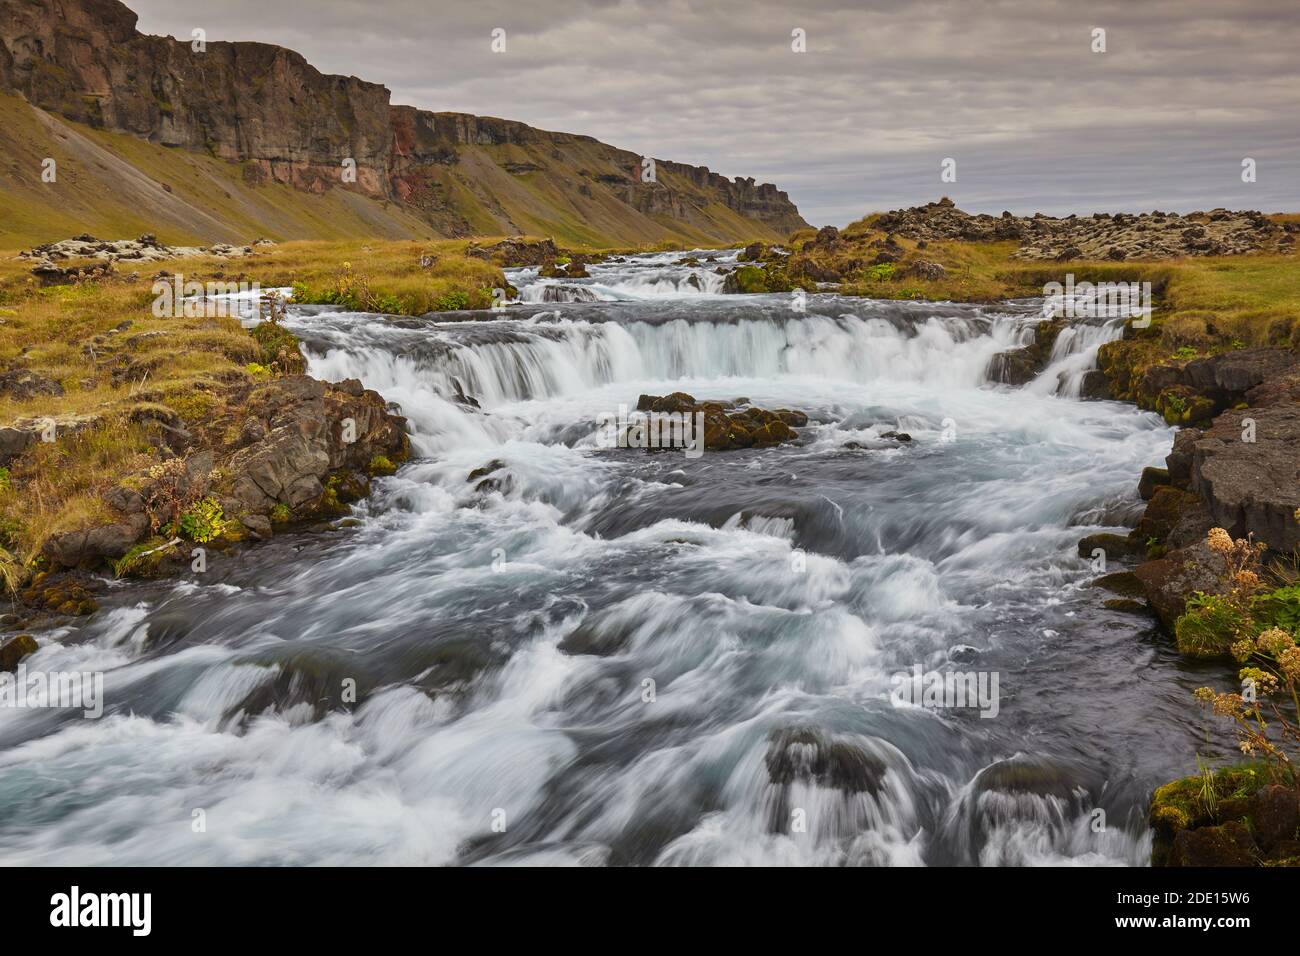 Un paysage islandais classique, une rivière qui coule le long de la base d'une falaise, la rivière Fossalar, près de Kirkjubaejarklaustur, Islande, régions polaires Banque D'Images